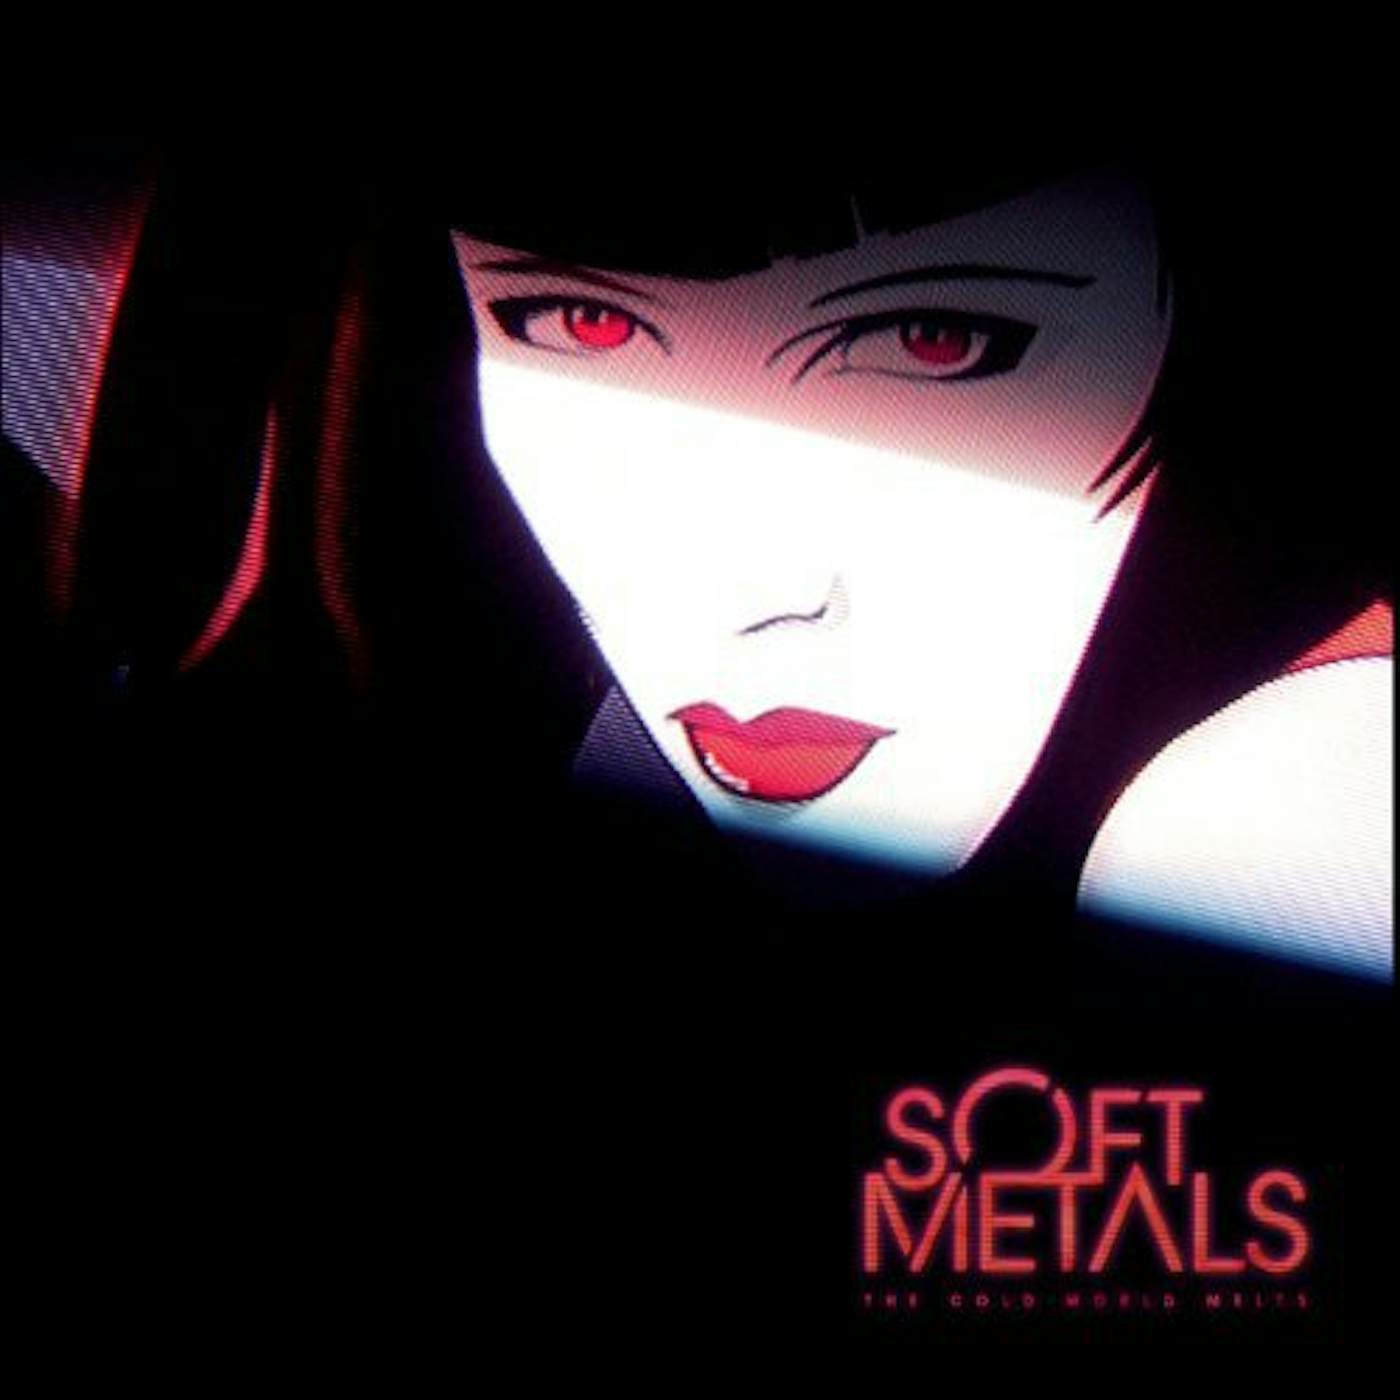 Soft Metals COLD WORLD MELTS Vinyl Record